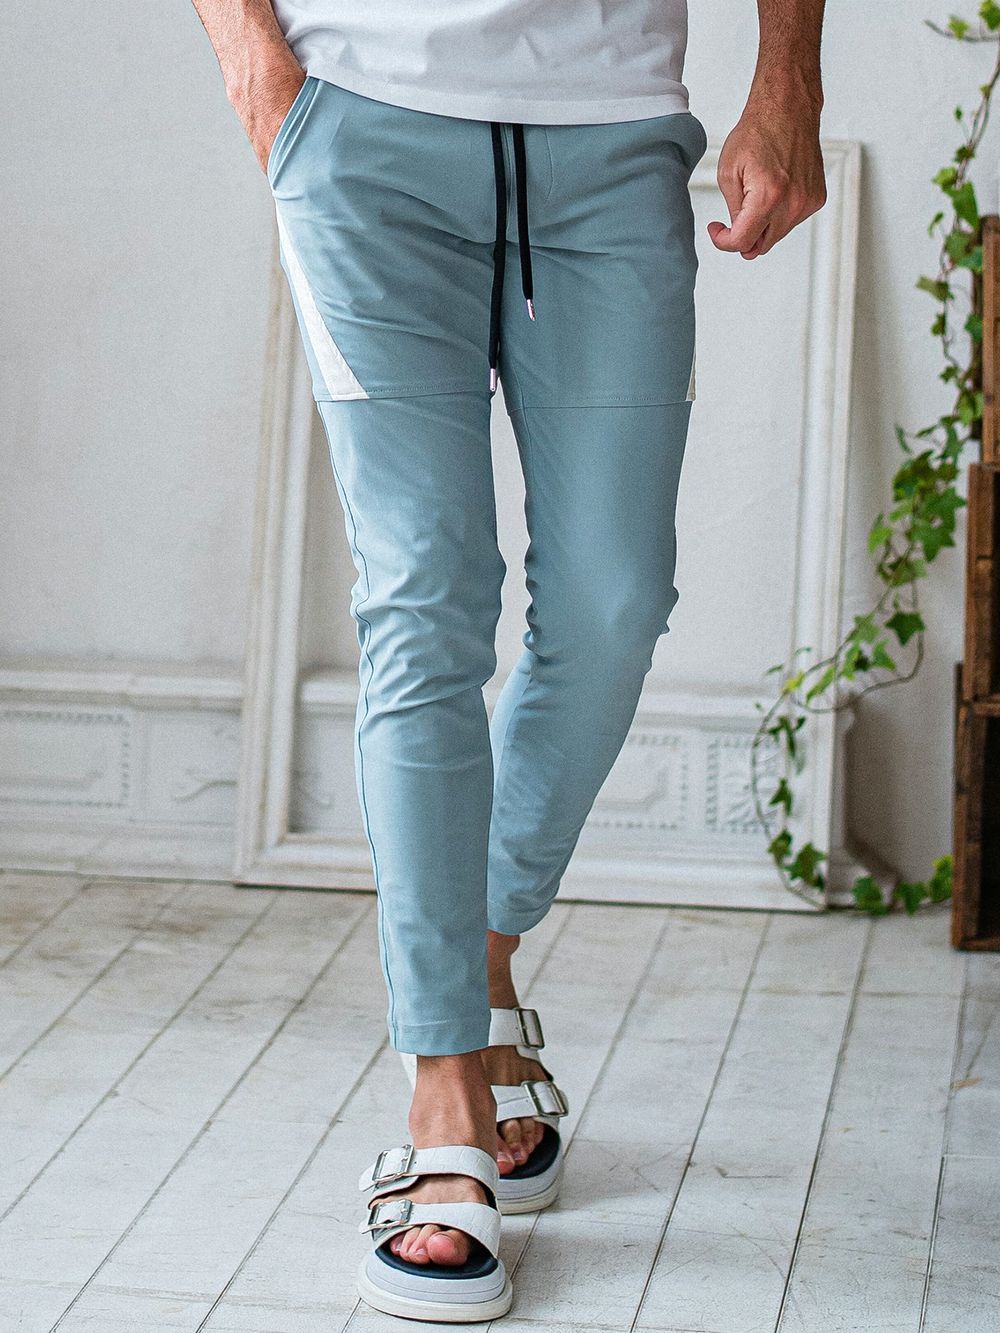 RESOUND CLOTHING - TYLER PANTS スラックス イージーパンツ (ブルー ...